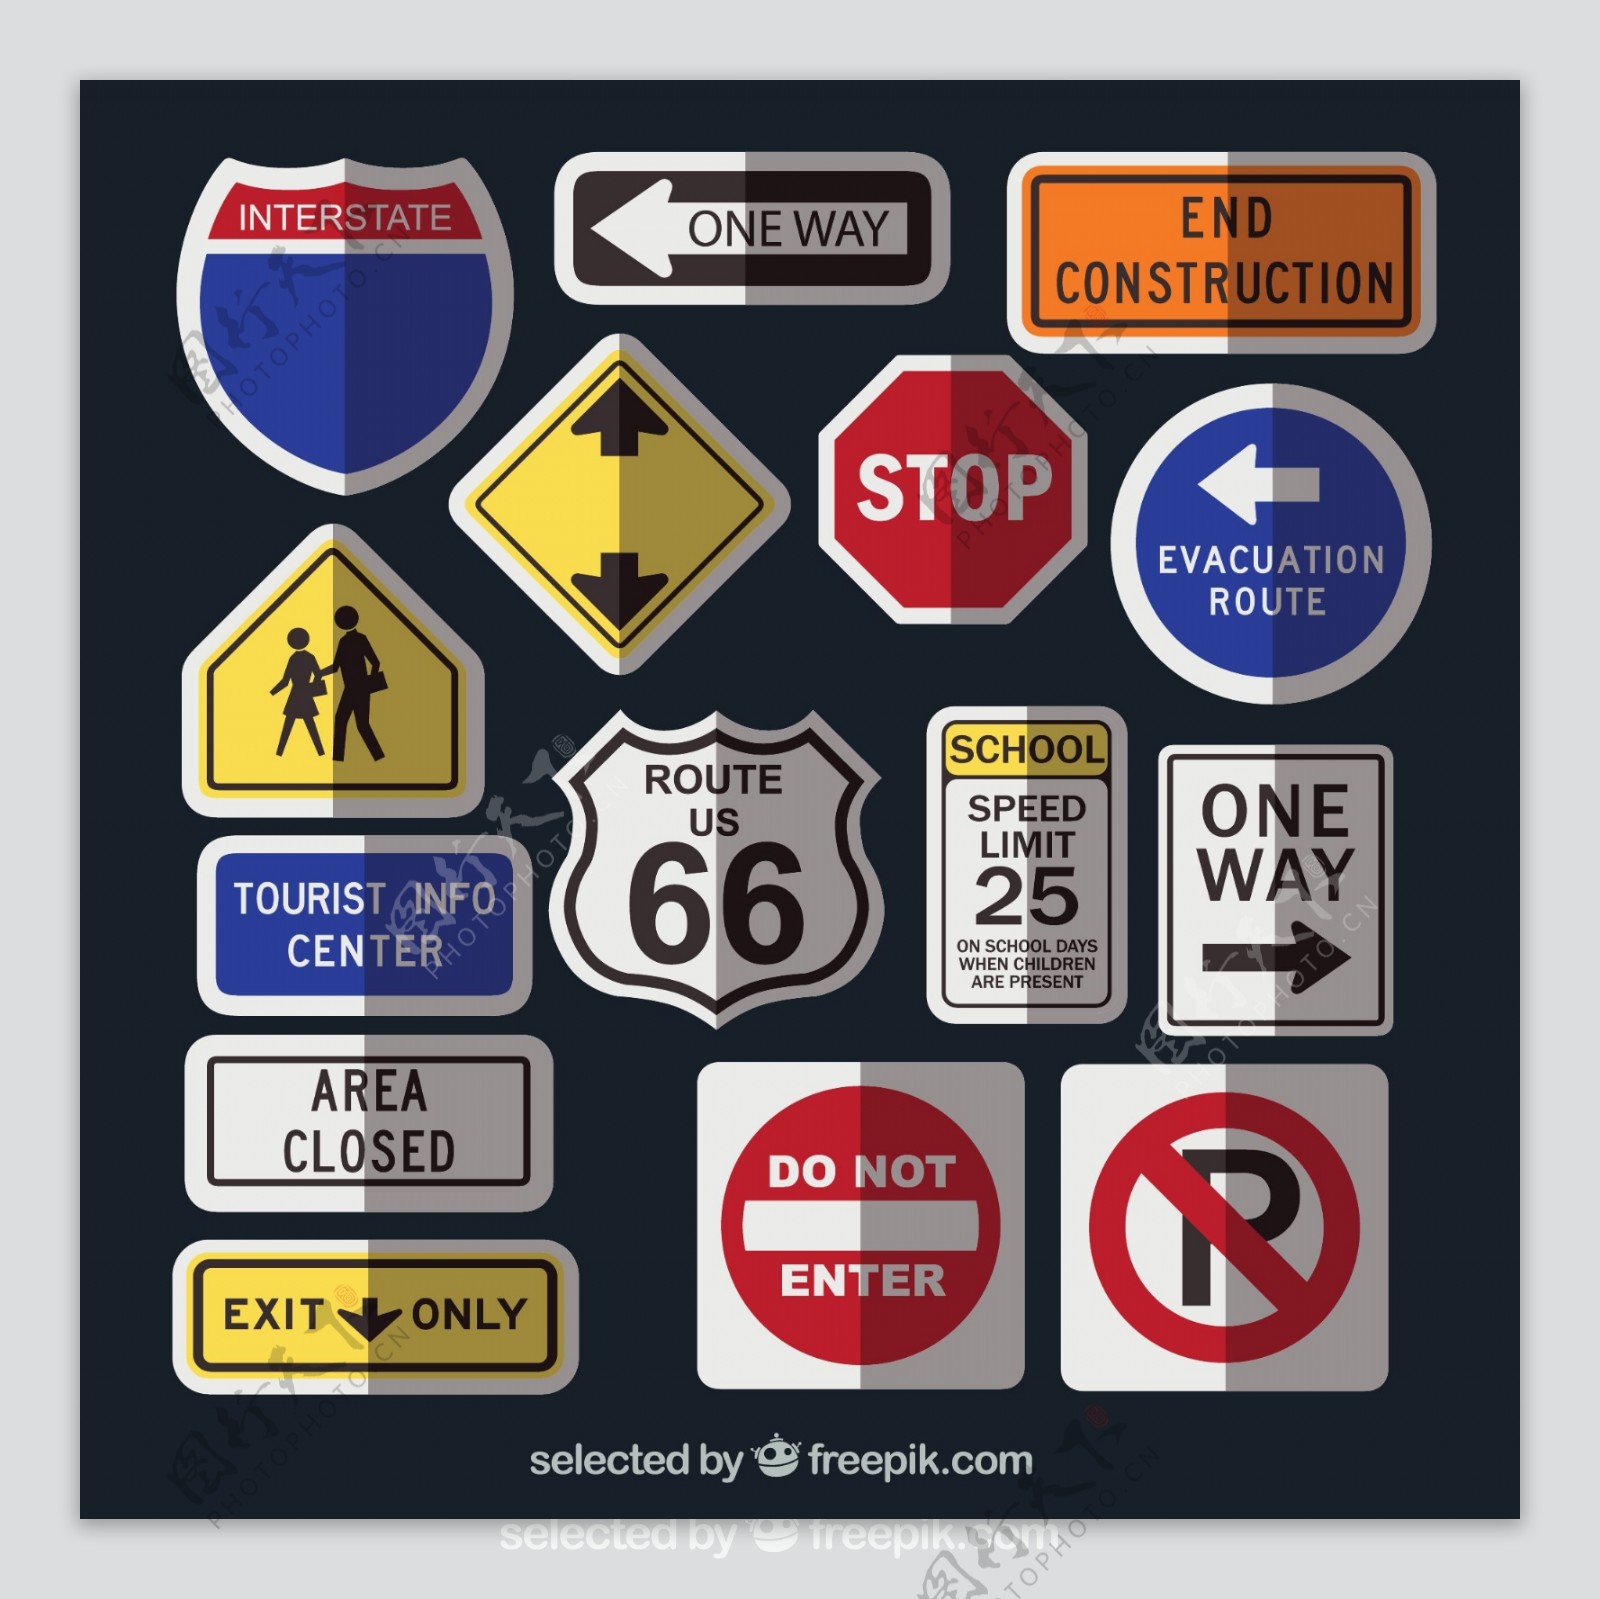 美国道路交通标志